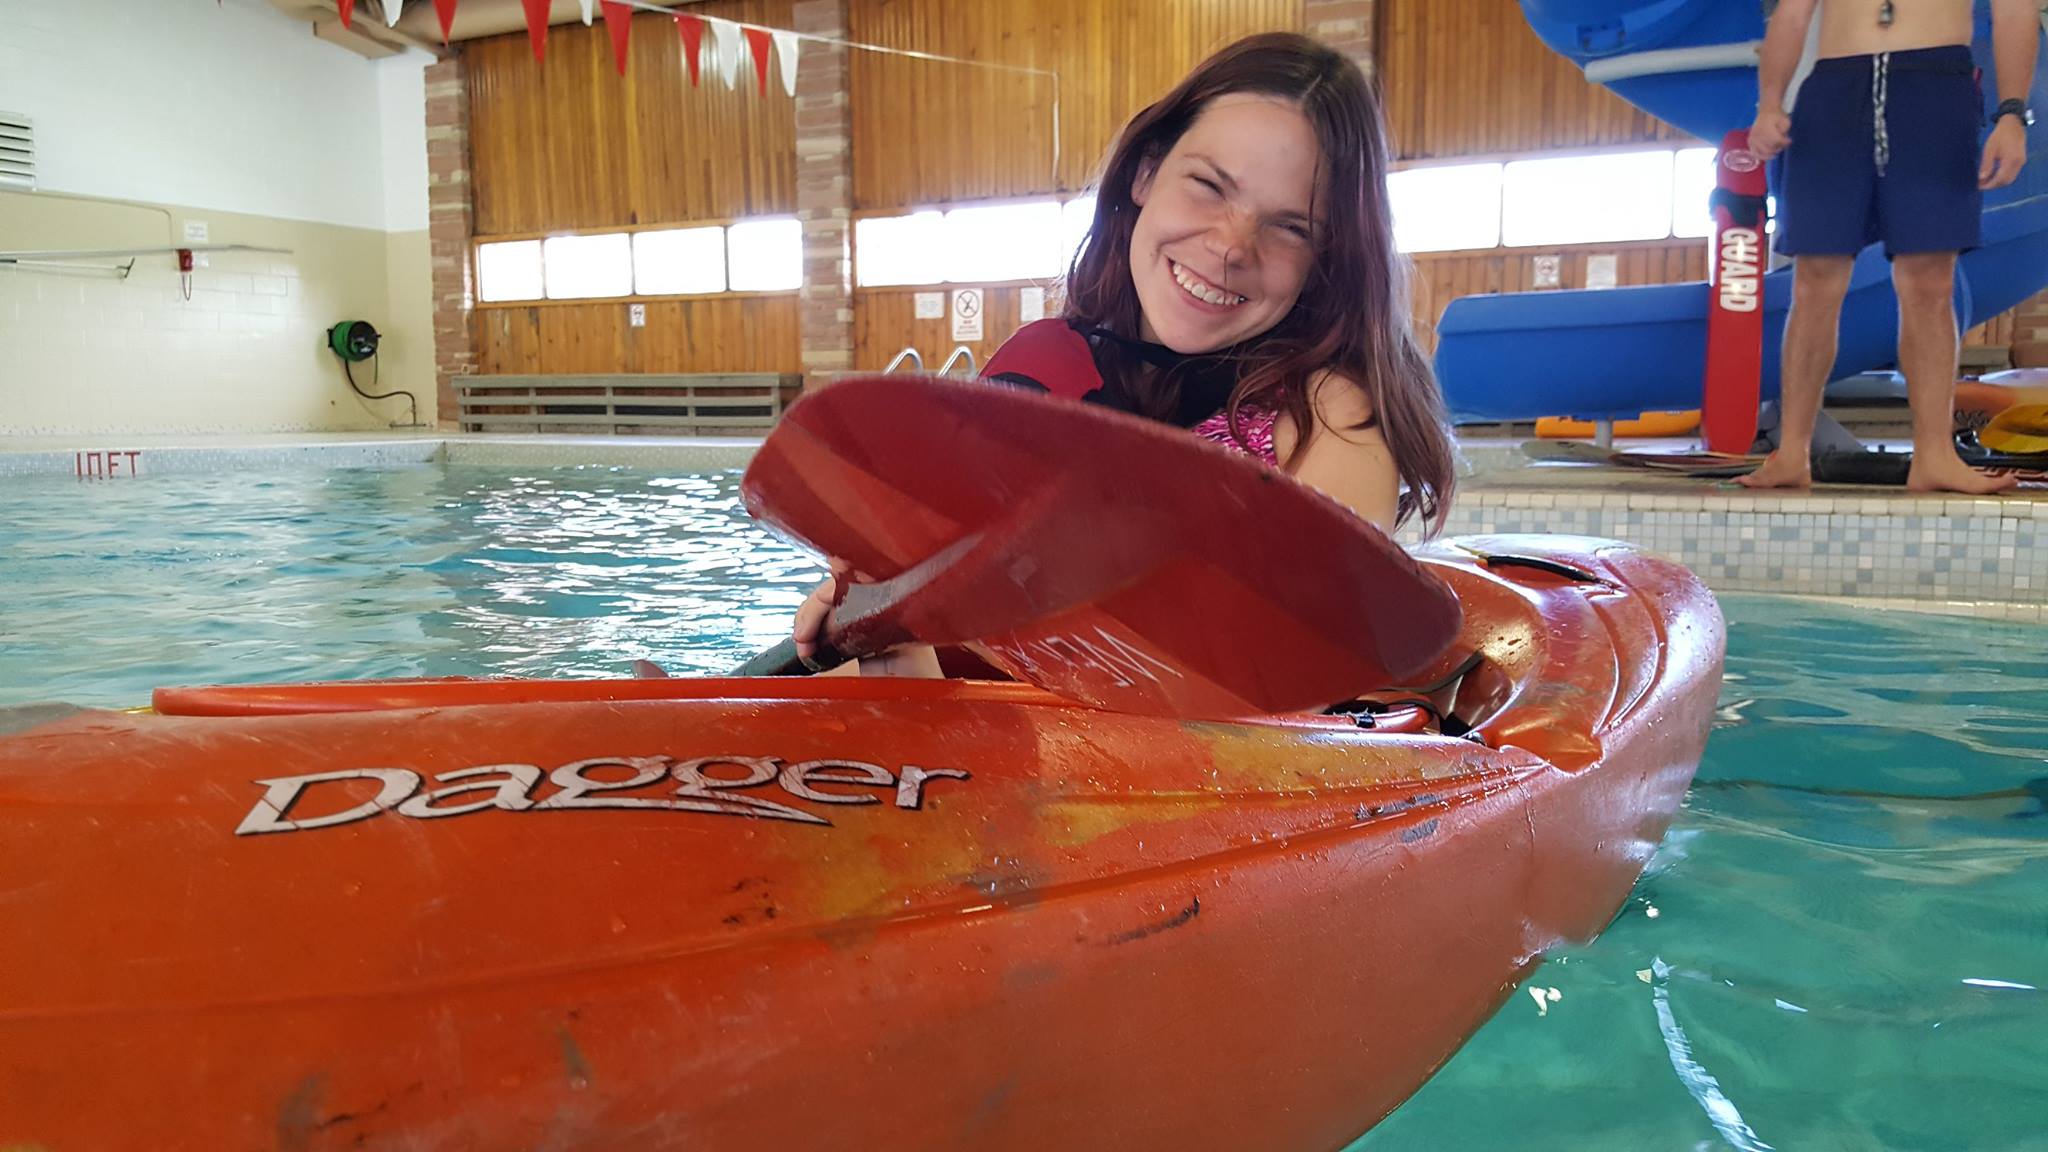 Athlete in kayak in swimming pool smiling at camera